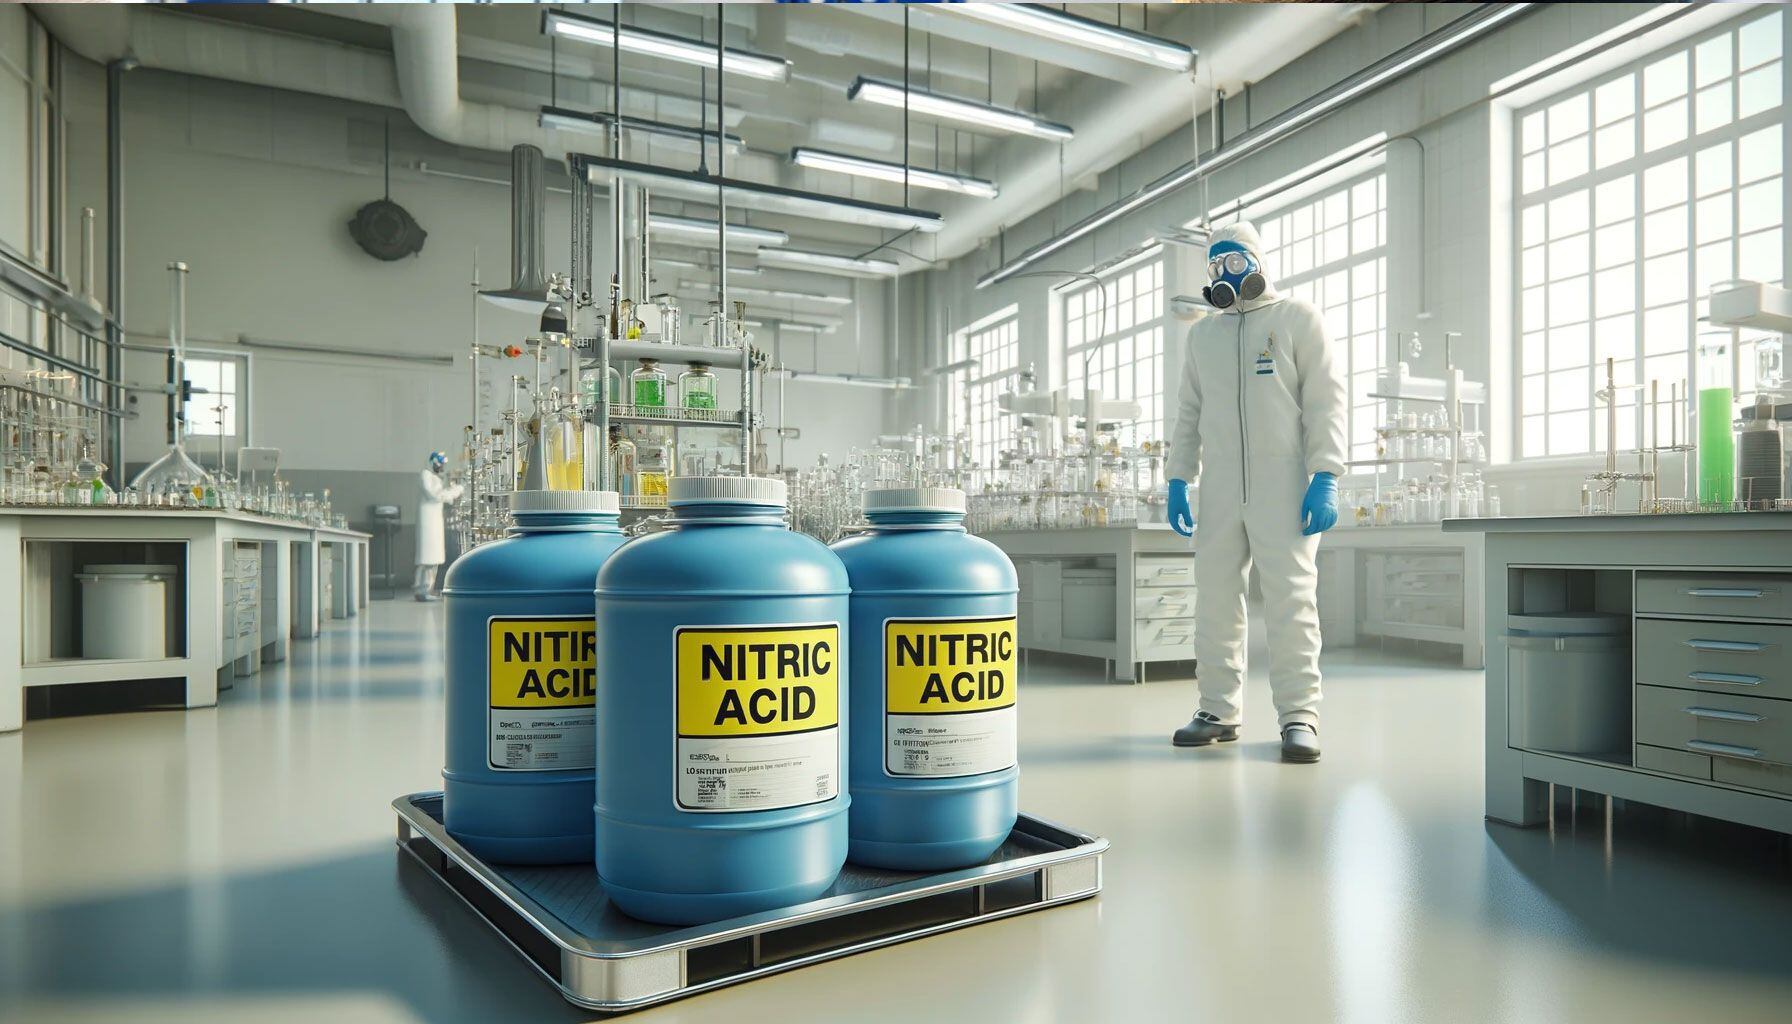 El ácido nítrico es un oxidante fuerte y reacciona violentamente con materiales combustibles como carbón o alcohol. Es corrosivo para los metales.